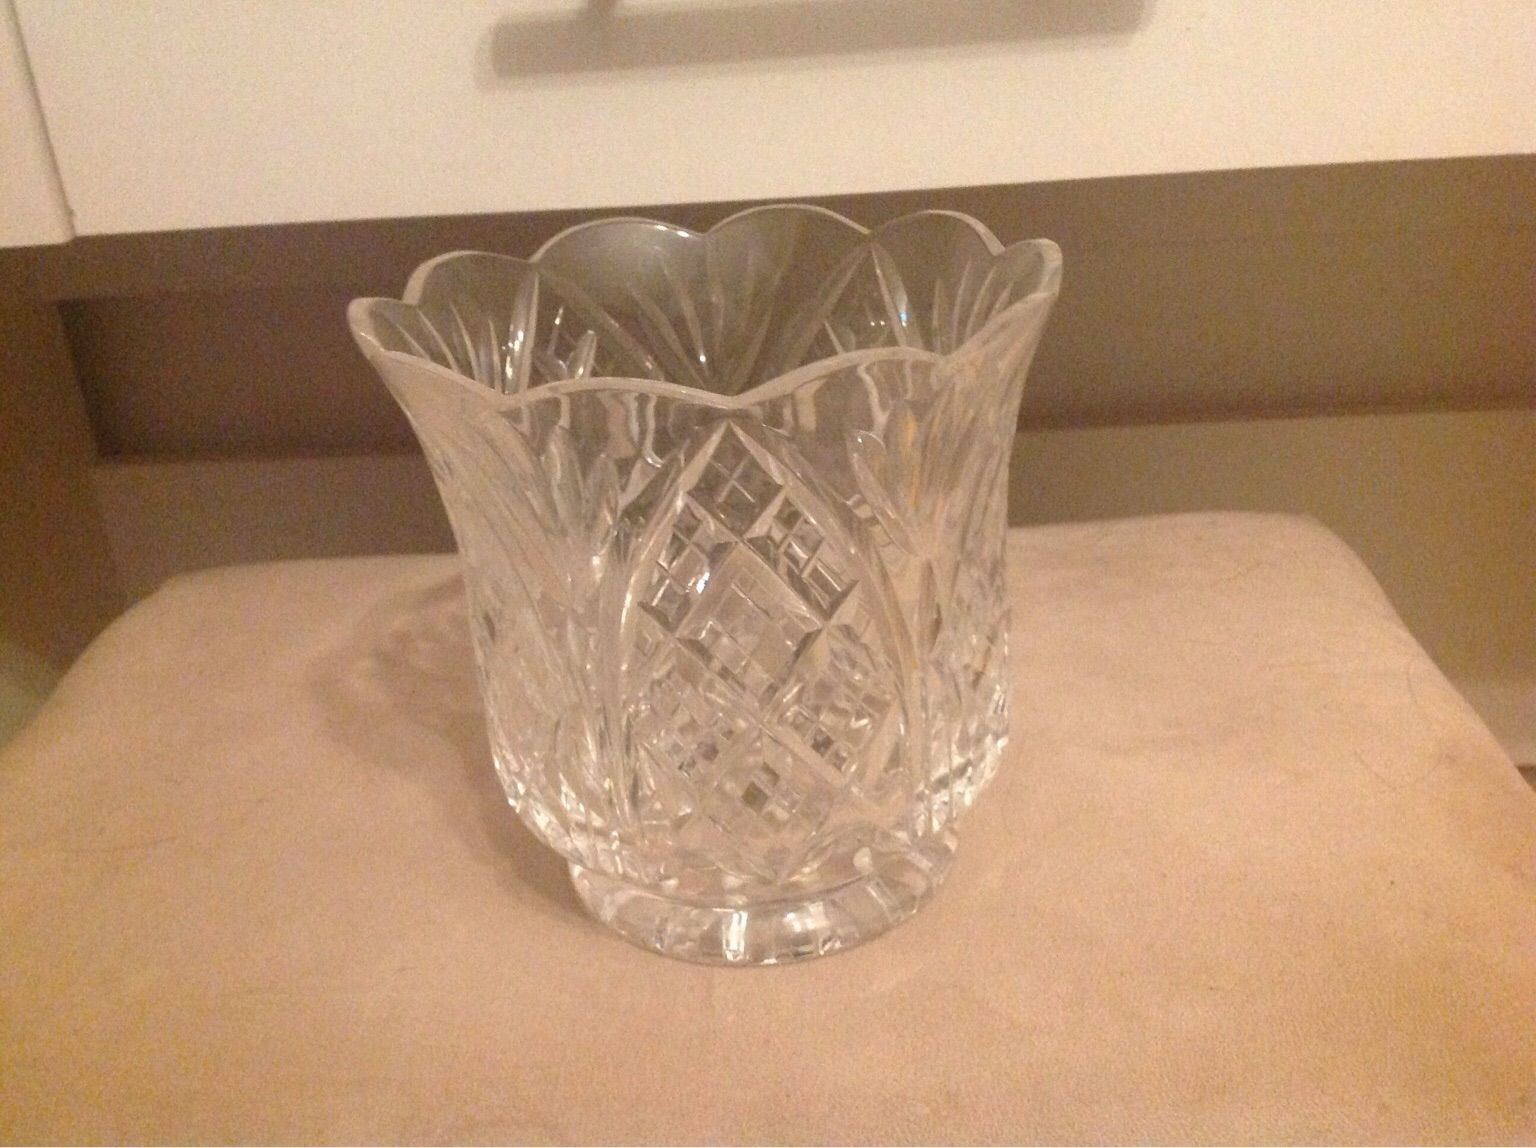 20 Awesome Weller Vase Value 2024 free download weller vase value of https en shpock com i wmucfctt7rd3b1cr 2018 10 10t015529 within waterford crystal vase 20af0c92